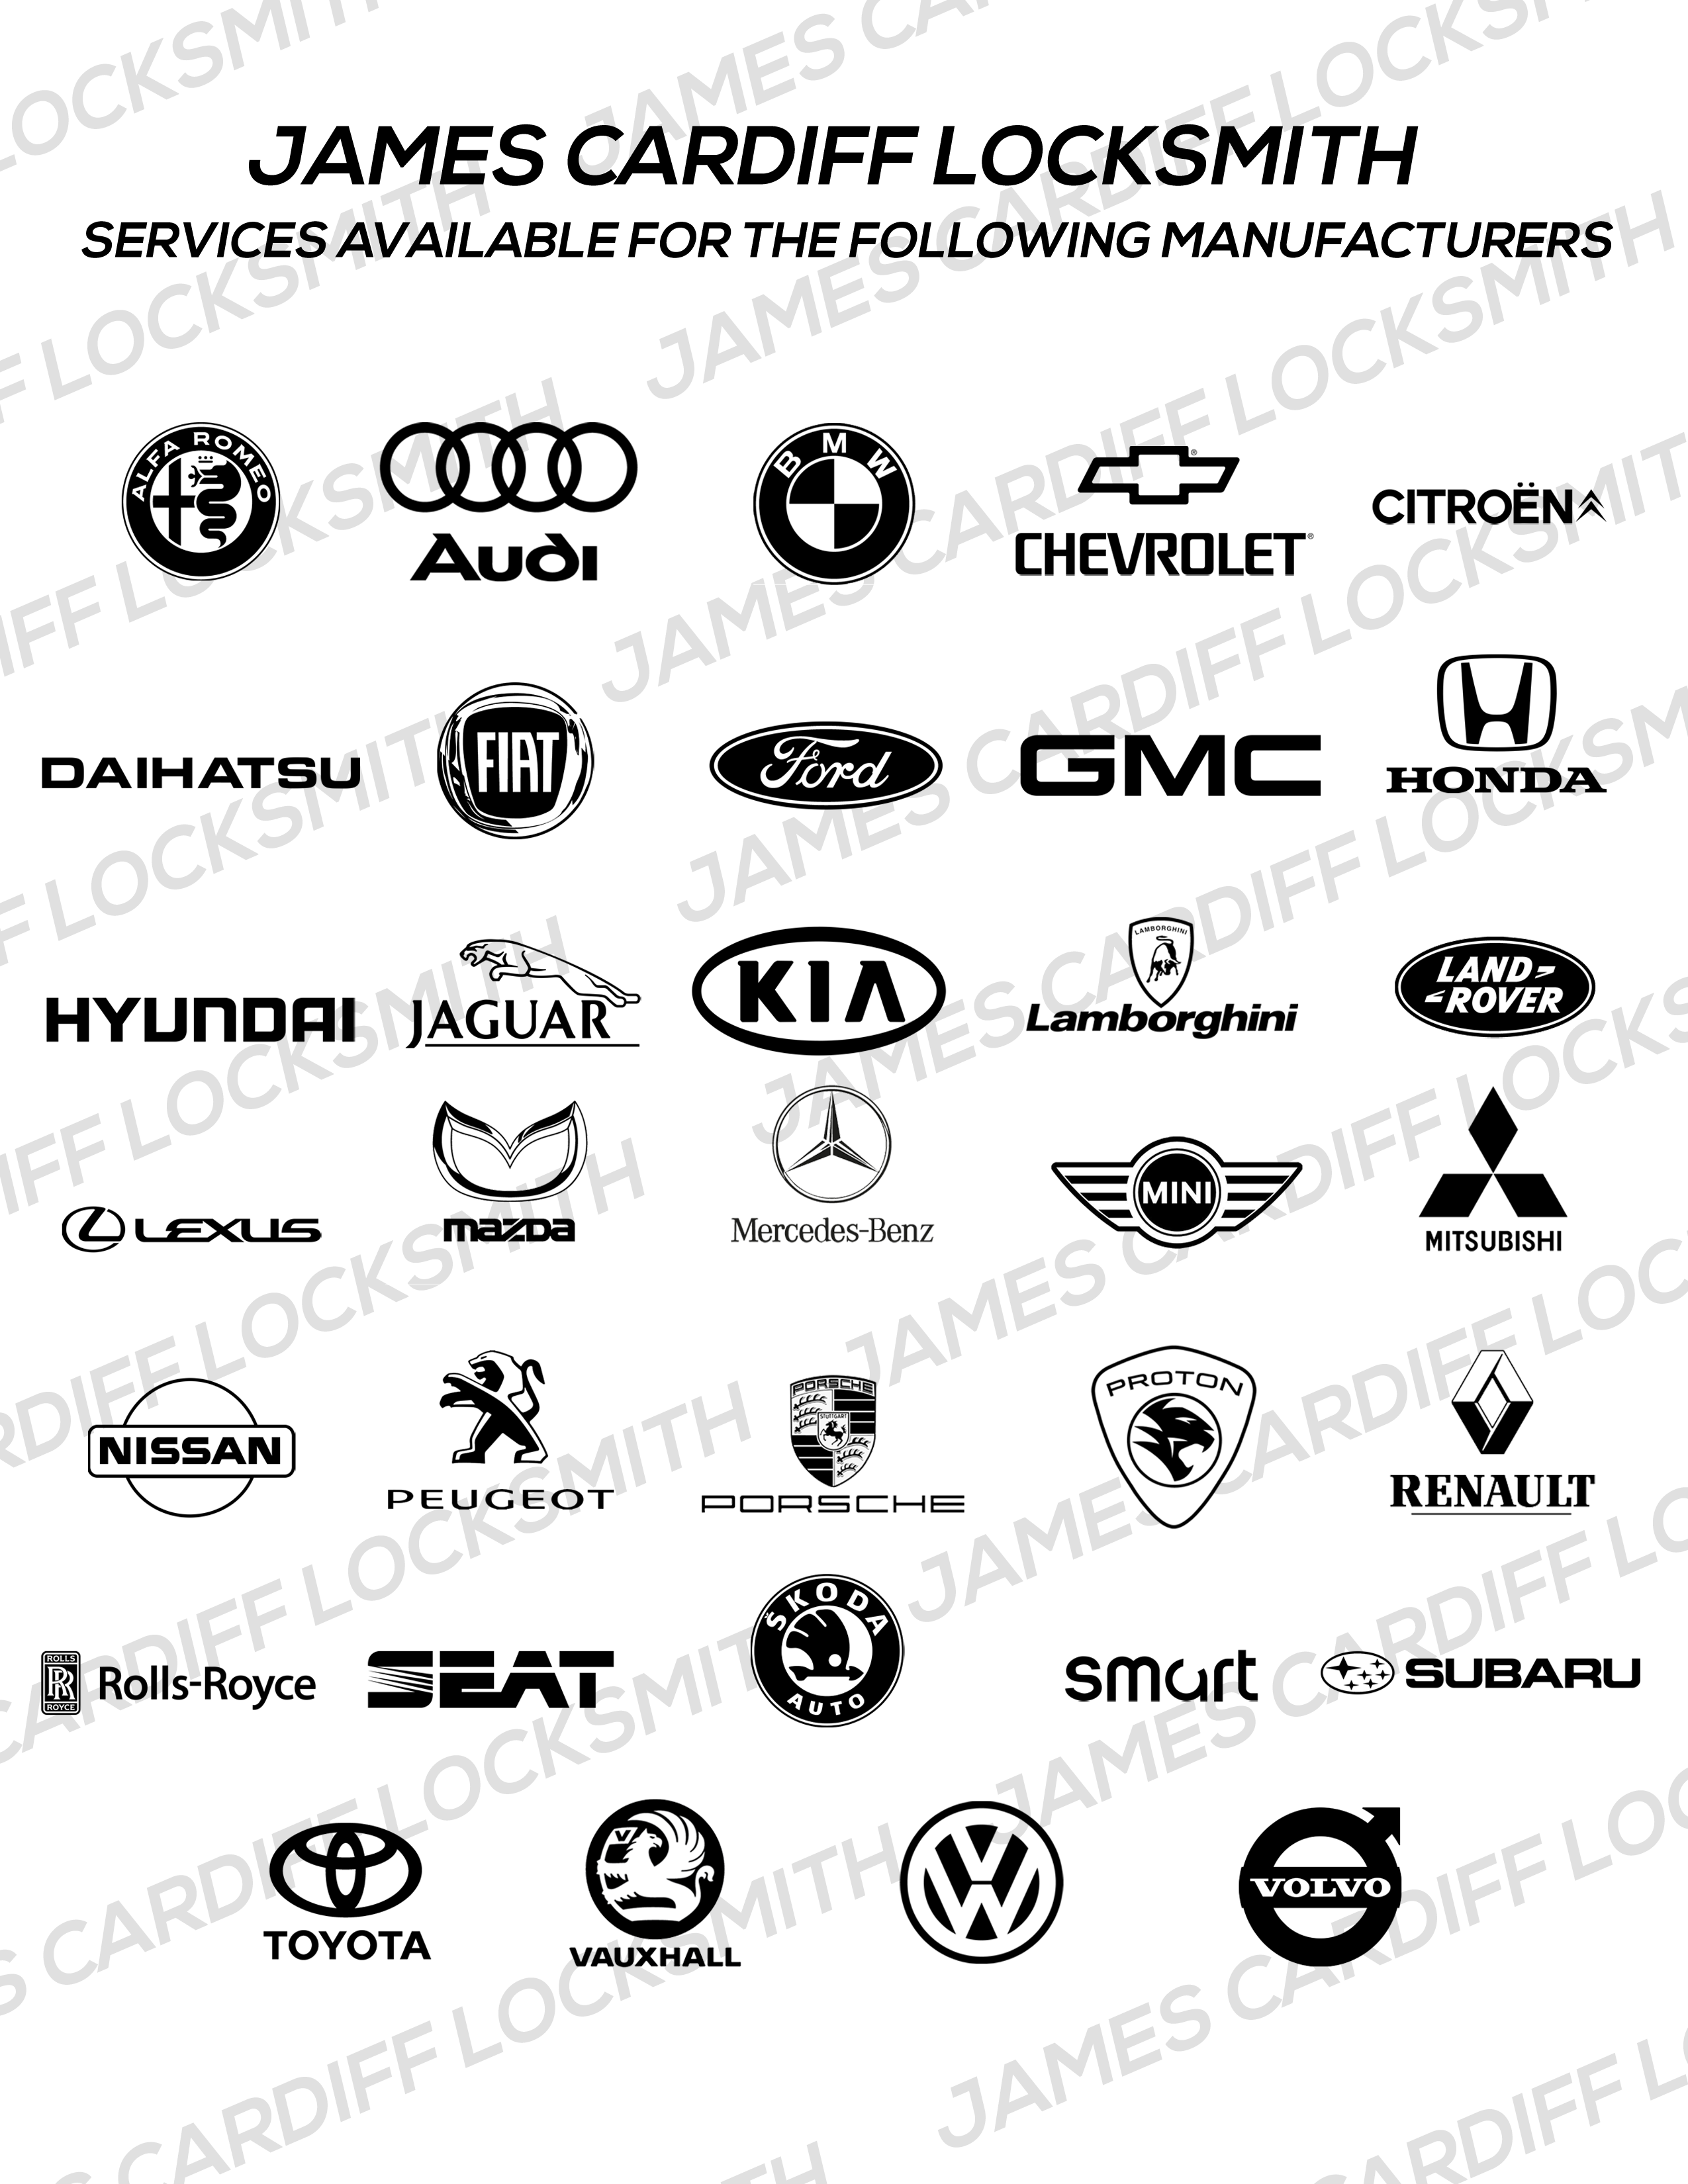 Car Key Manufactures - We Make Keys For 